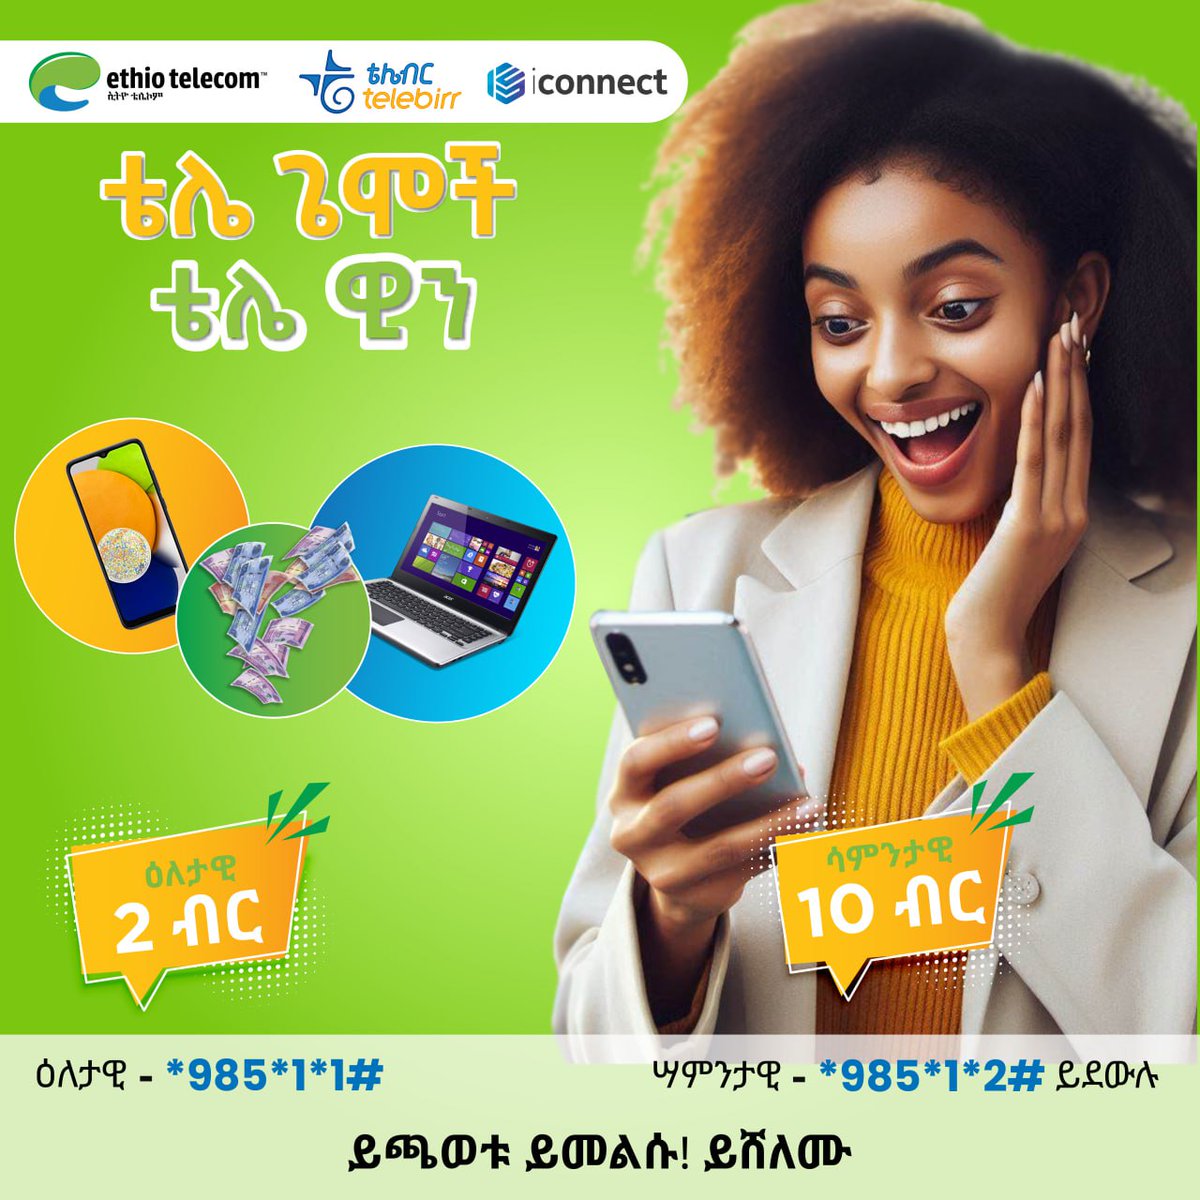 አሁንም በቴሌዊን ጨዋታዎች 5ሺህ ኢ-ገንዘብ በቴሌብር፣ ላፕቶፖችን፣ ስማርት ስልኮችን እና አየር ሰዓት ለመሸለም ለዕለታዊ *985*1*1# ለሳምንታዊ *985*1*2# ይደዉሉ! #Ethiotelecom #telebirr #DigitalAfrica #DigitalEthiopia #RealizingDigitalEthiopia